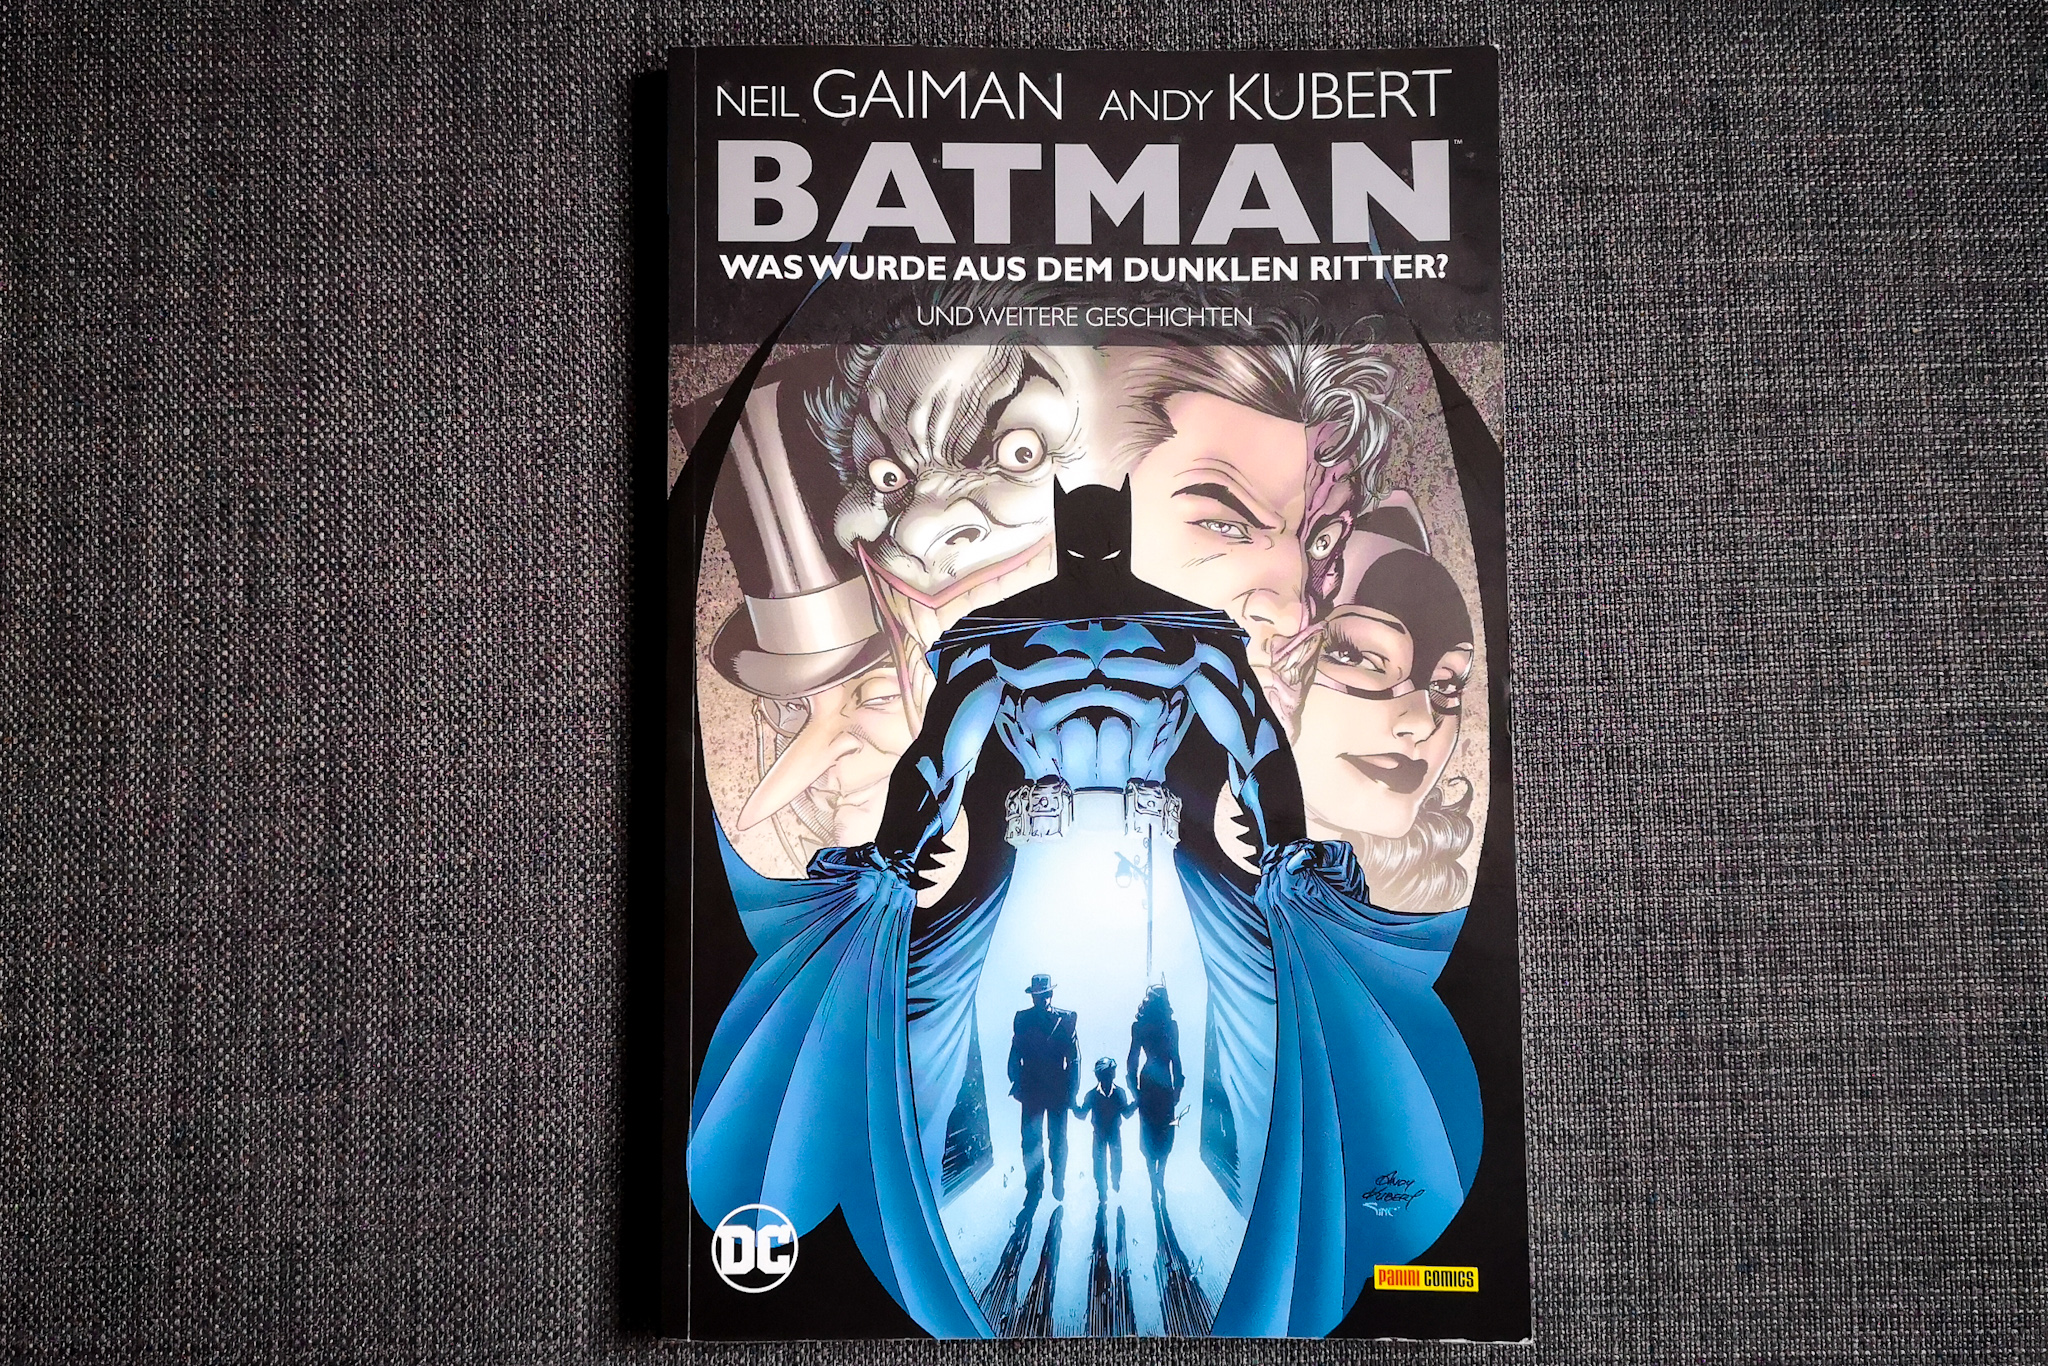 Neil Gaiman, Andy Kubert et al: „Batman: Was wurde aus dem Dunklen Ritter? Und weitere Geschichten“